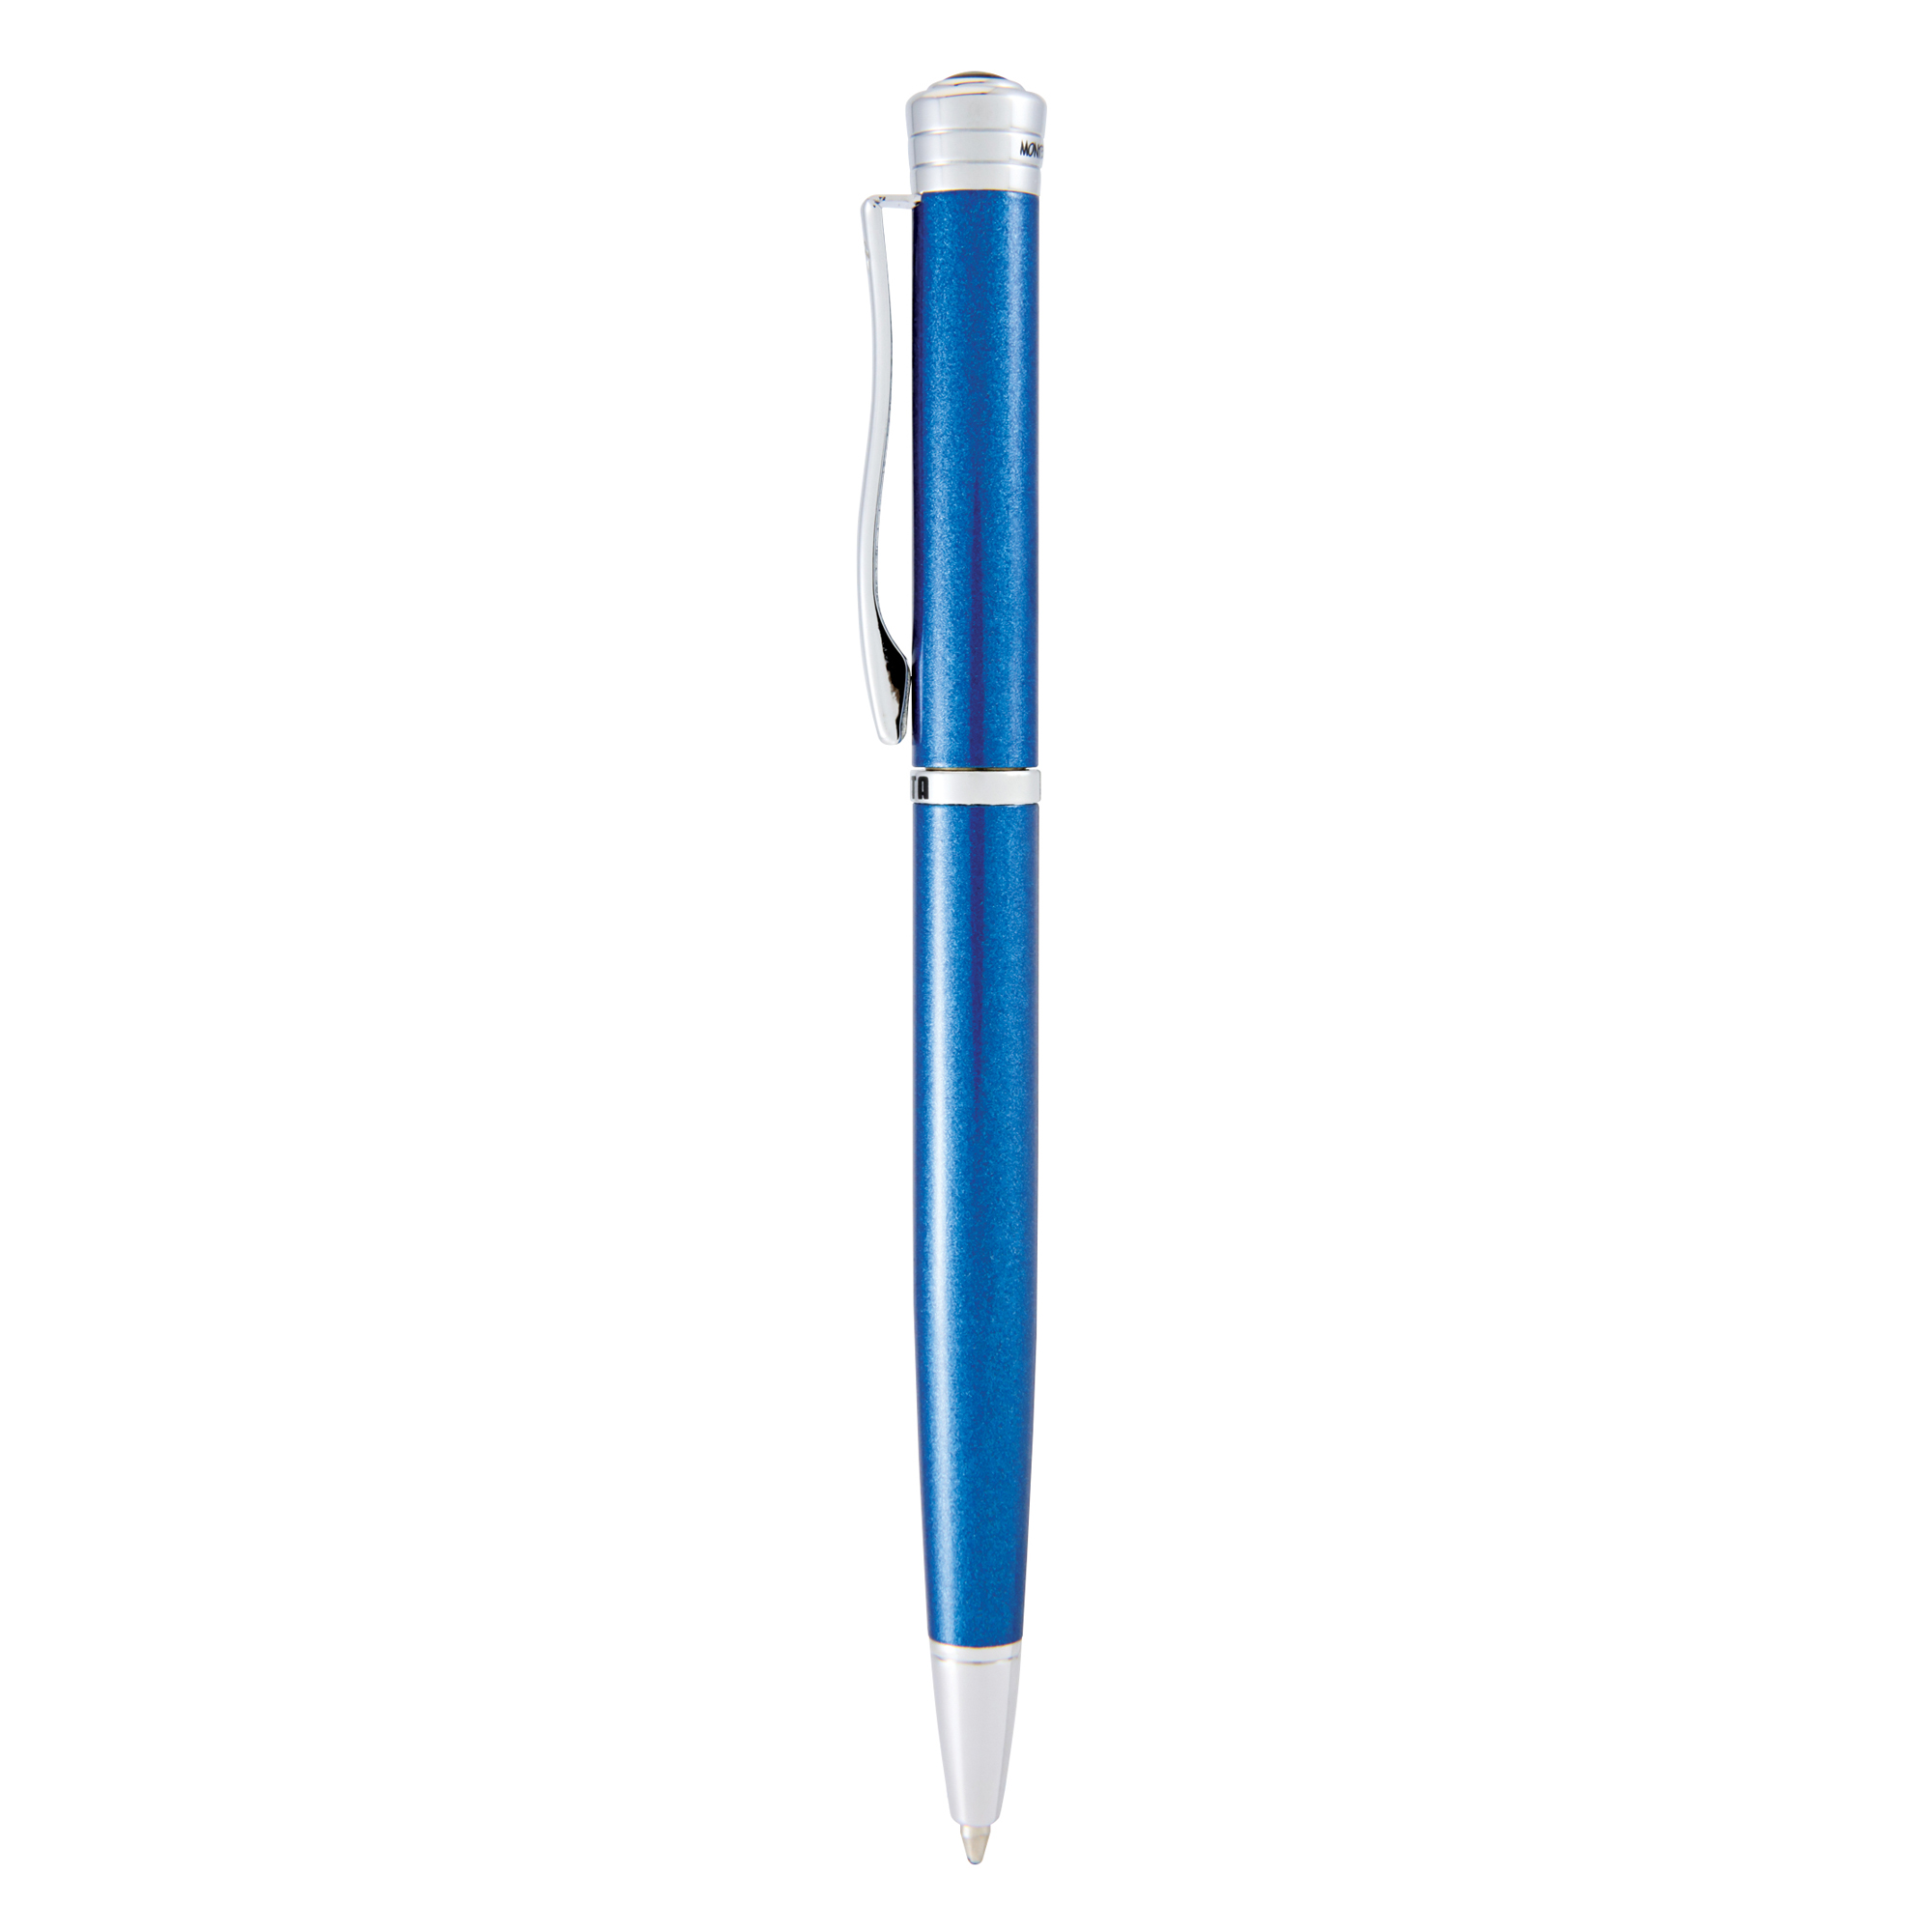 Penna sfera Strata - tratto medio - fusto blu - Monteverde